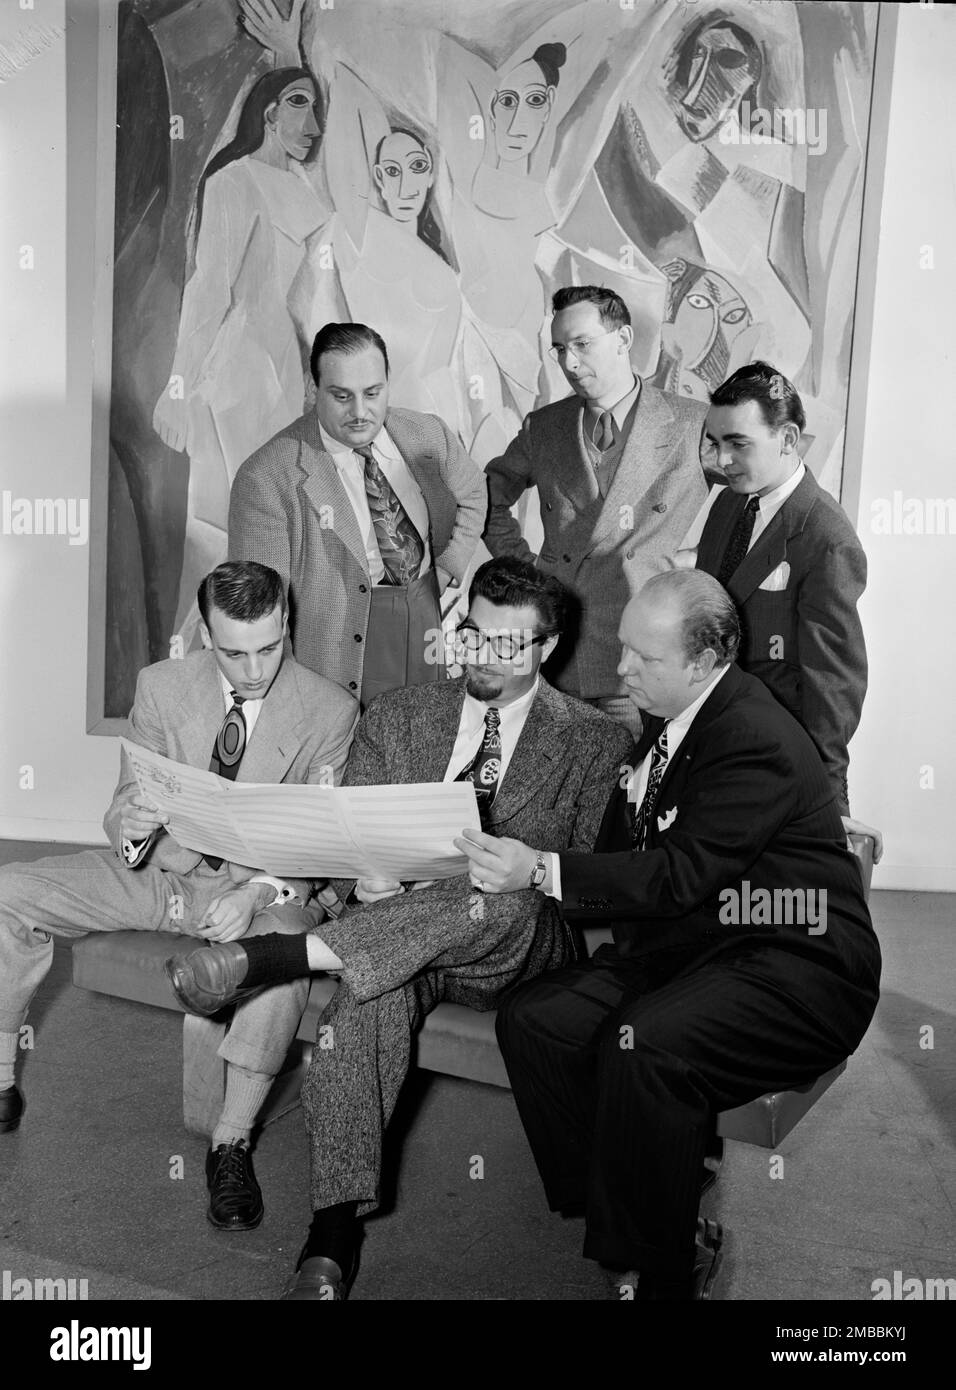 Retrato de Ralph Burns, Edwin A. Finckel, George Handy, Neal Hefti, Johnny Richards, Y Eddie Sauter, Museo de Arte Moderno, Nueva York, N.Y., ca. Marzo de 1947. Foto de stock